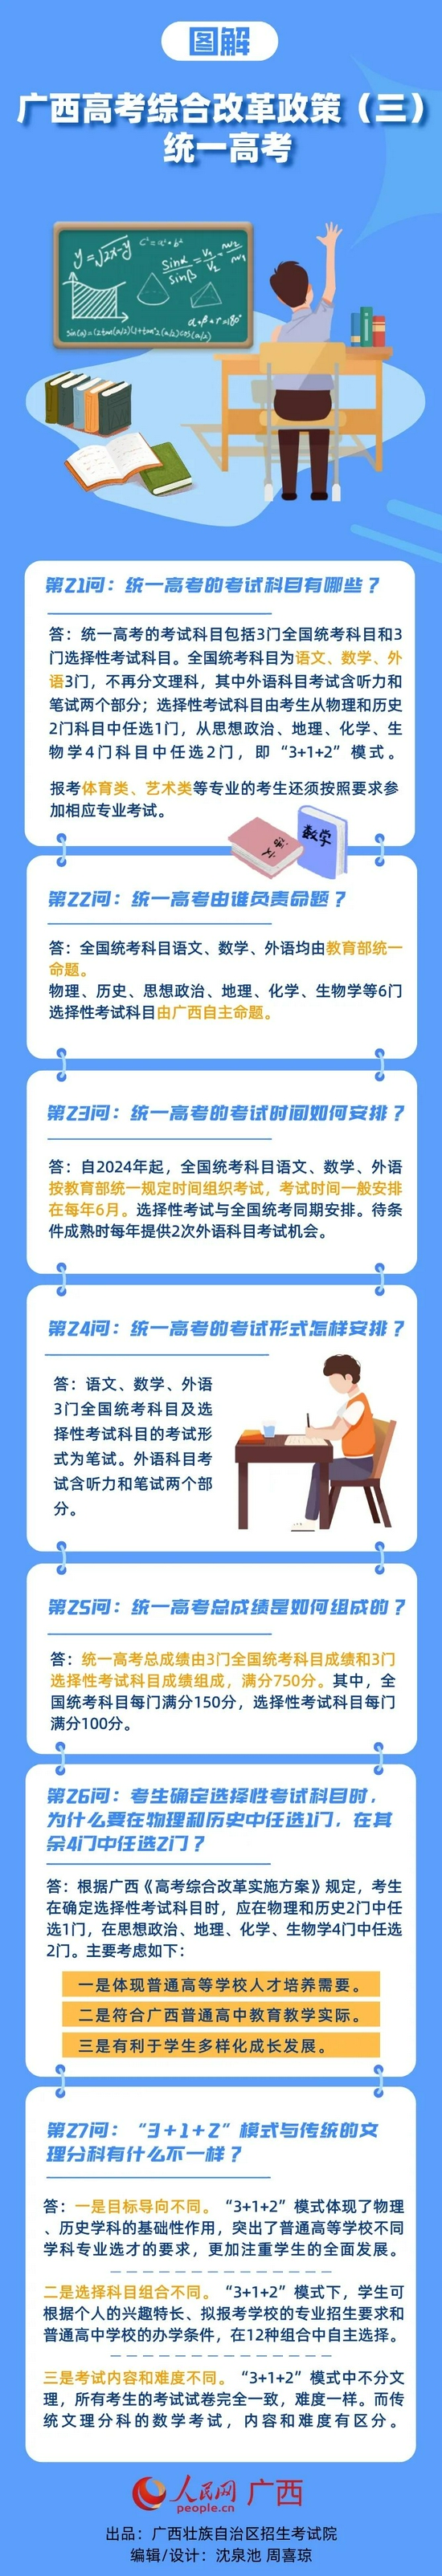 广西：高考综合改革政策图解